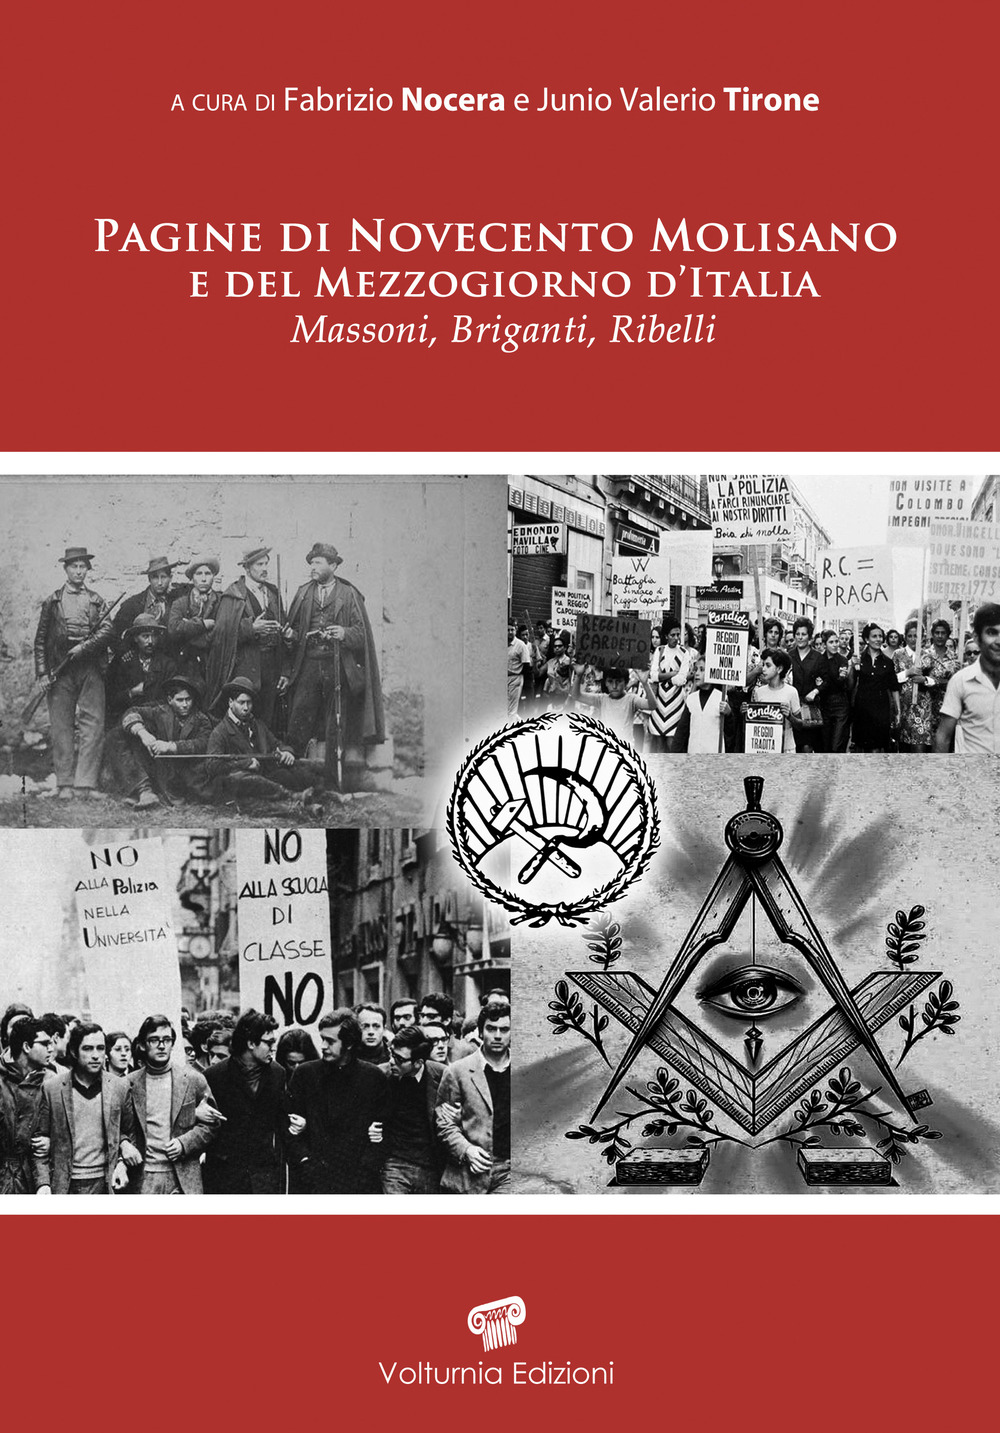 Pagine di Novecento molisano e del Mezzogiorno d'Italia. Massoni, briganti e ribelli